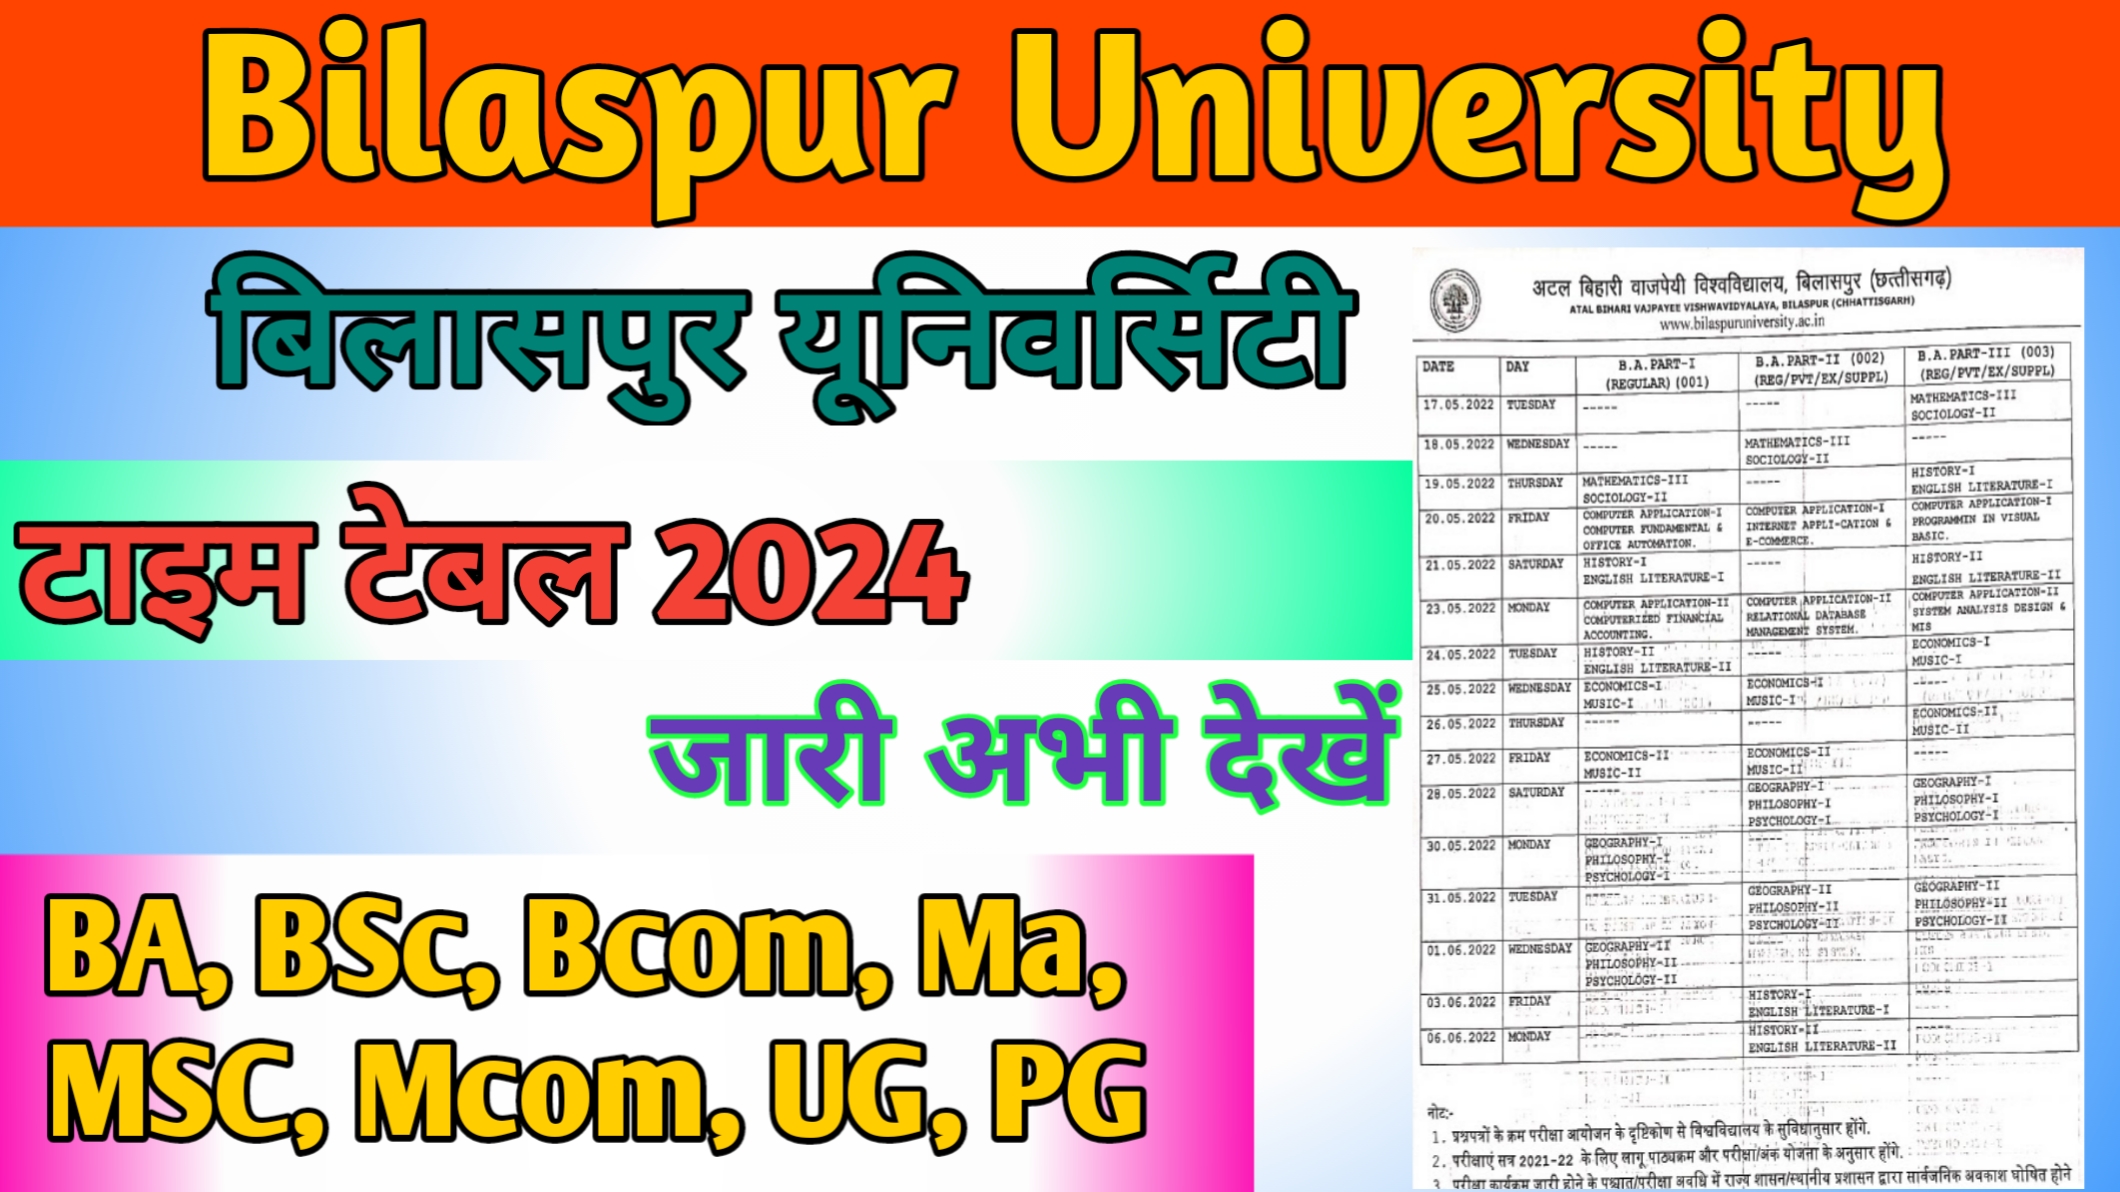 Bilaspur University Time Table 2024